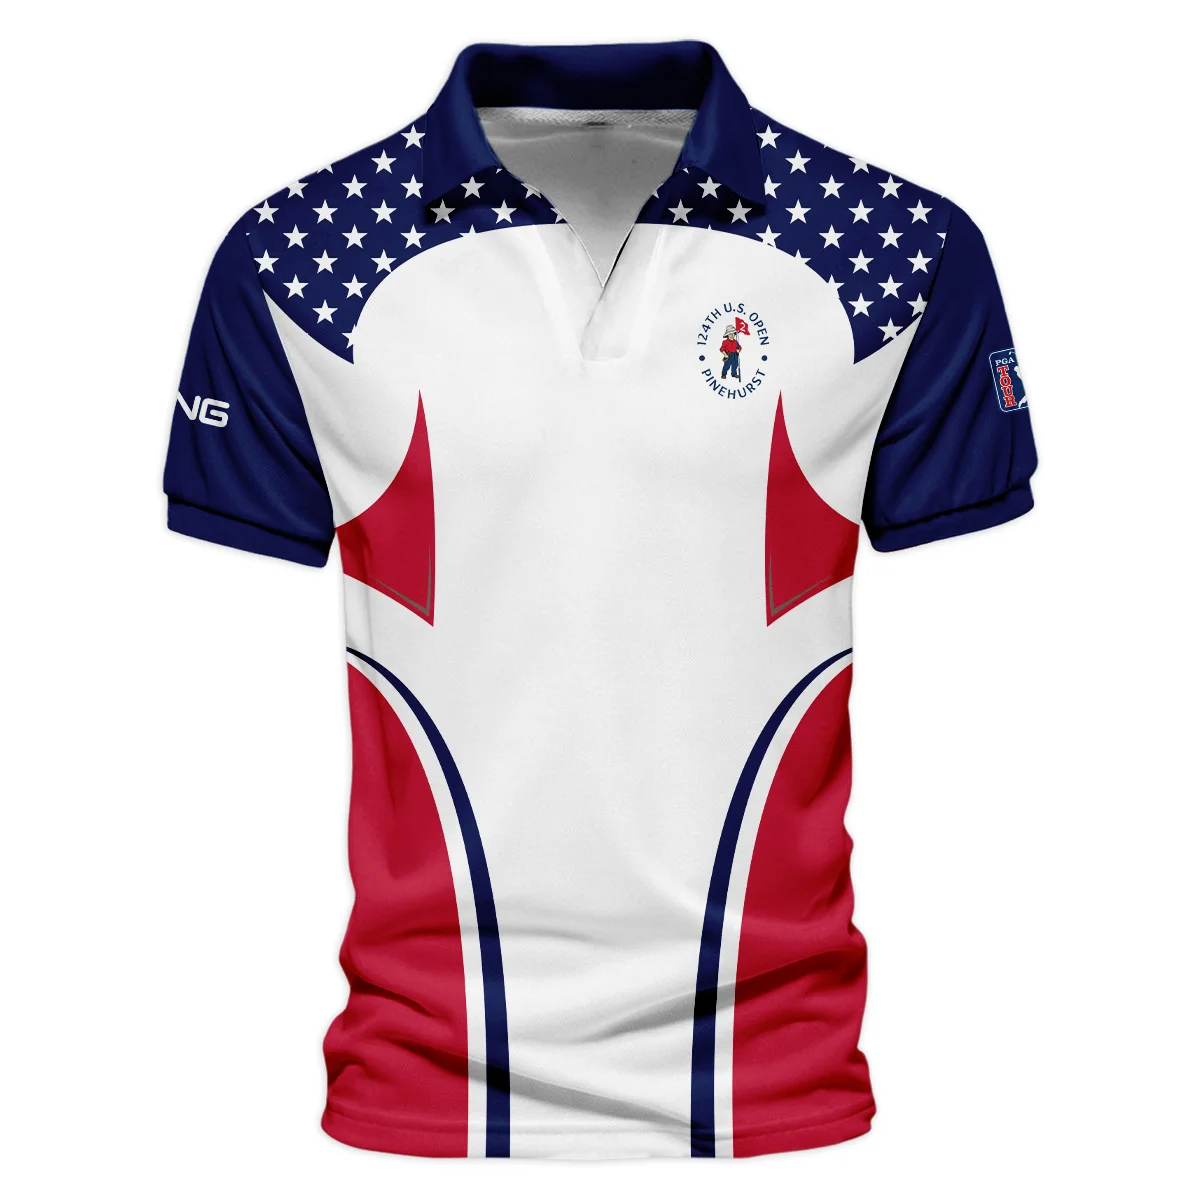 124th U.S. Open Pinehurst Ping Stars White Dark Blue Red Line Vneck Polo Shirt Style Classic Polo Shirt For Men